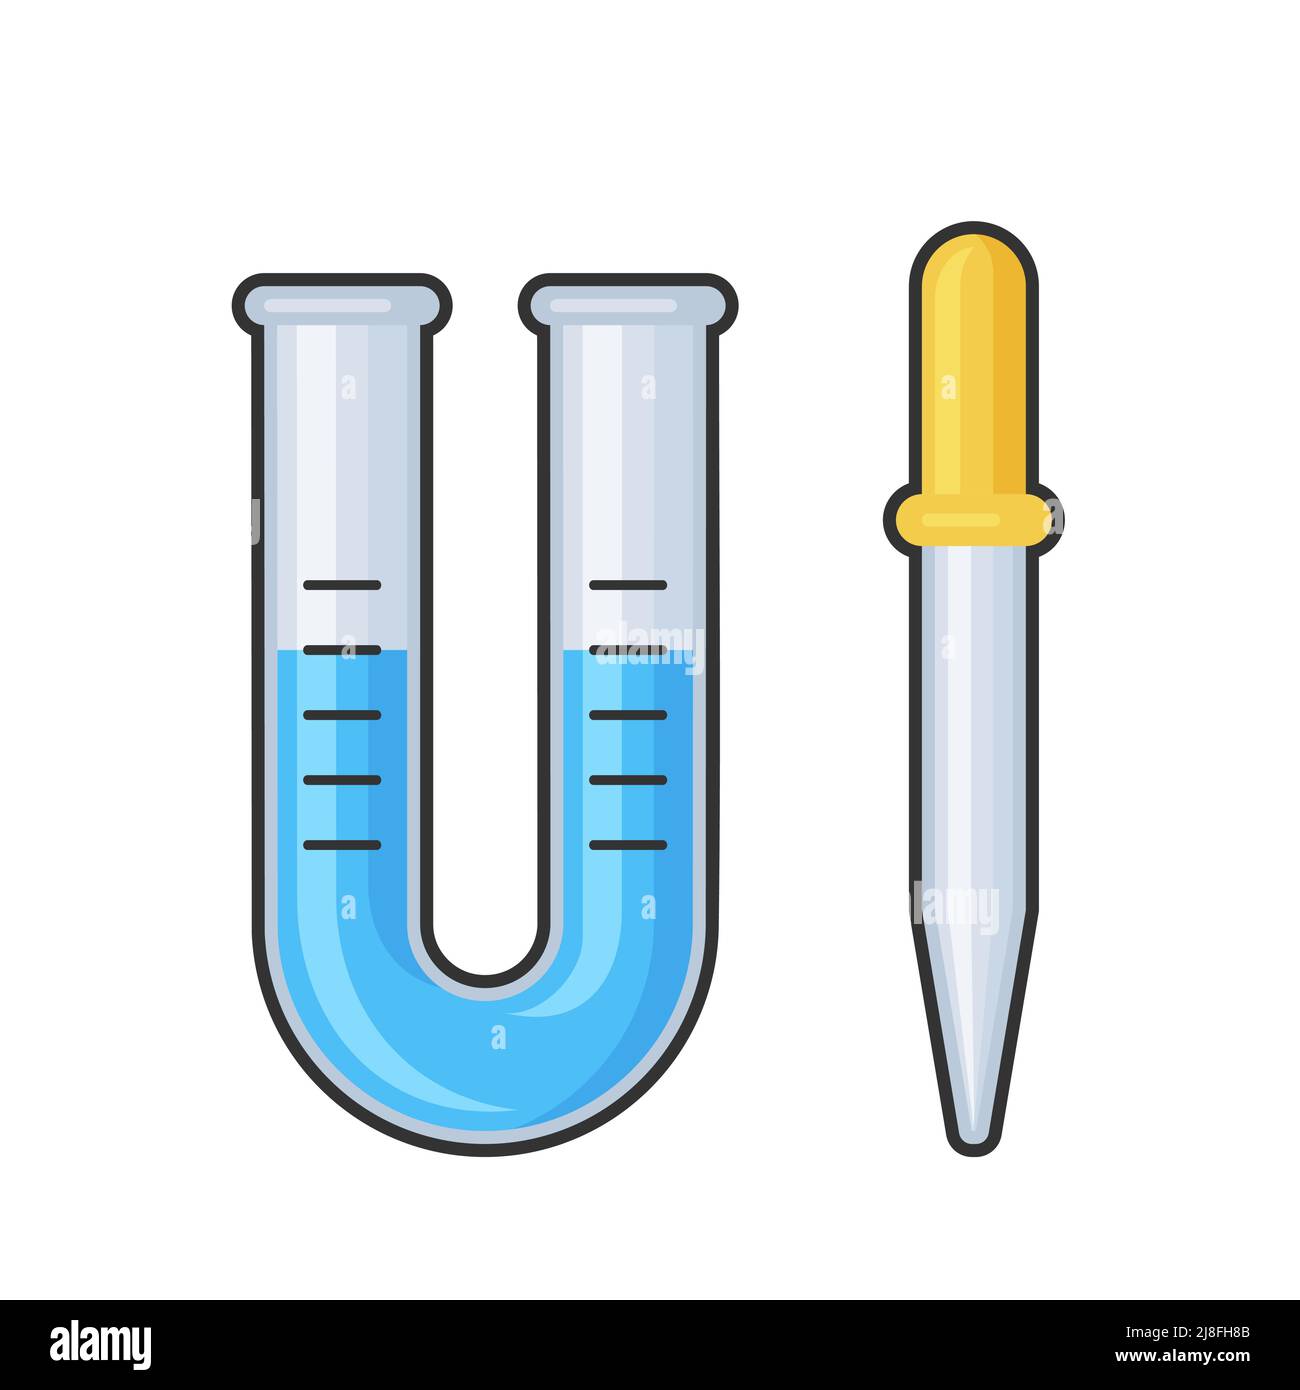 Chemie Wissenschaft Labor Test Glasrohr und Kolben Vektor-Symbol Eingestellt Stock Vektor